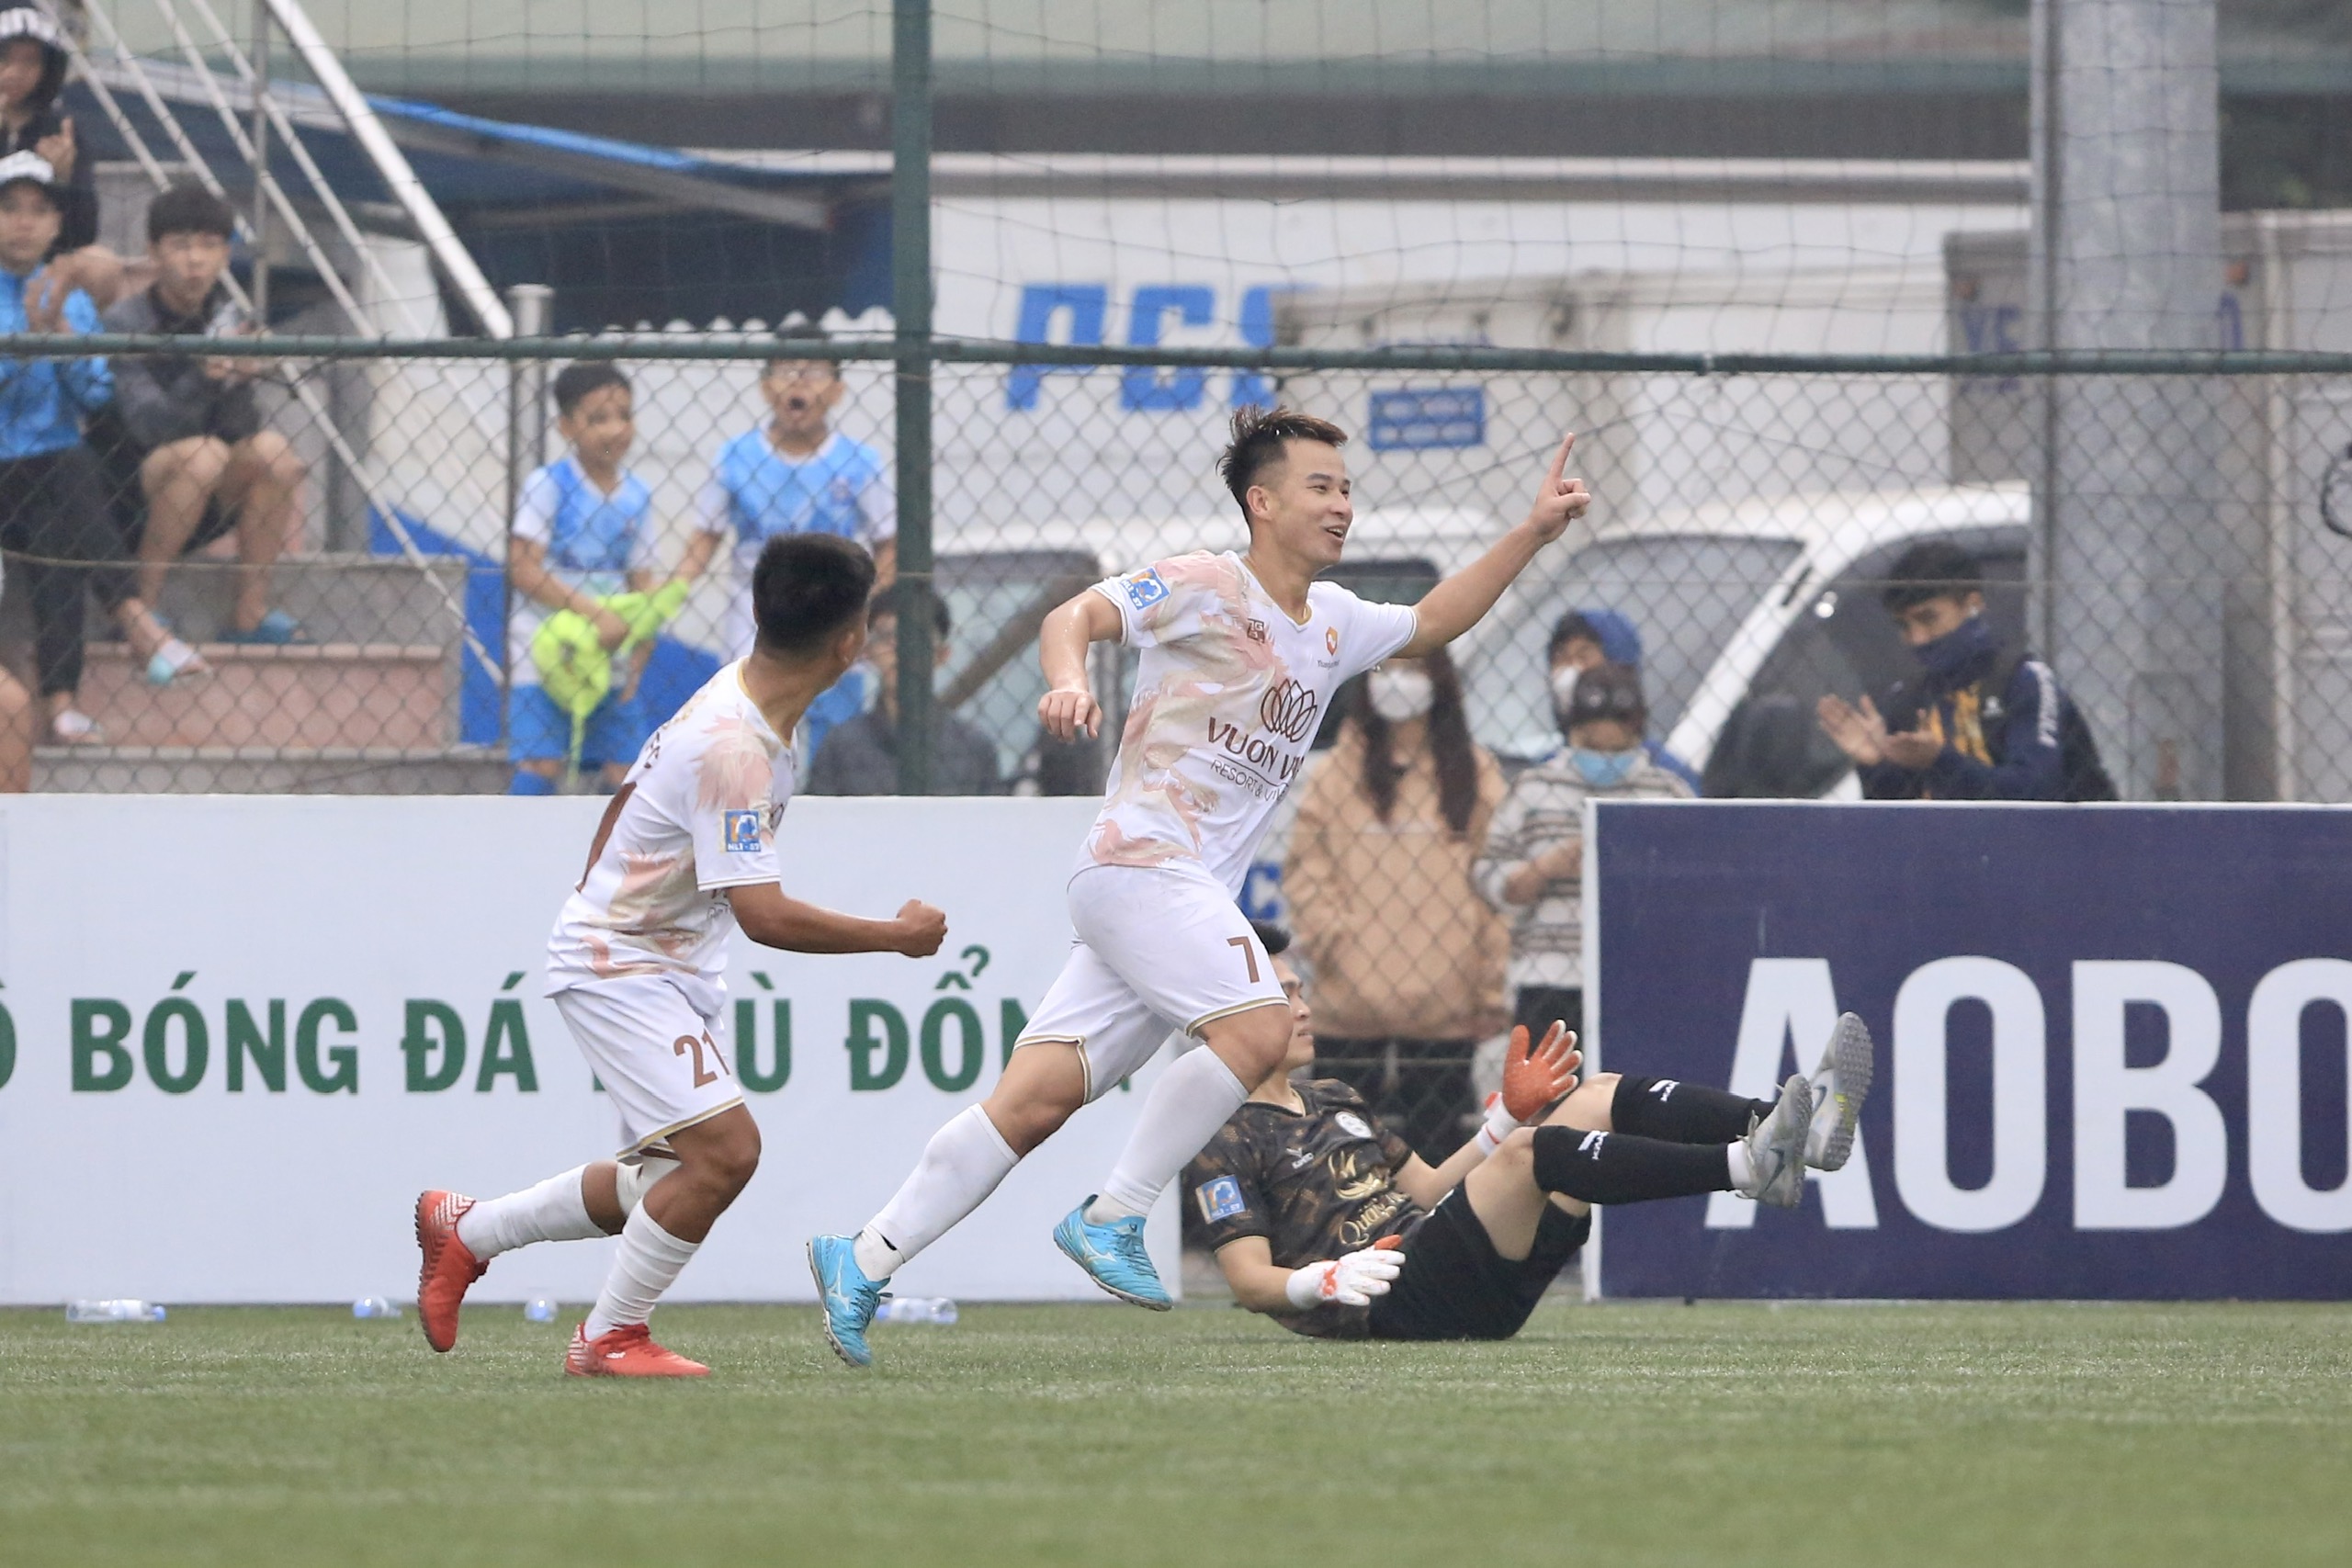 TIG FC 1-0 Bắc Giang: Khoảng khắc của ngôi sao